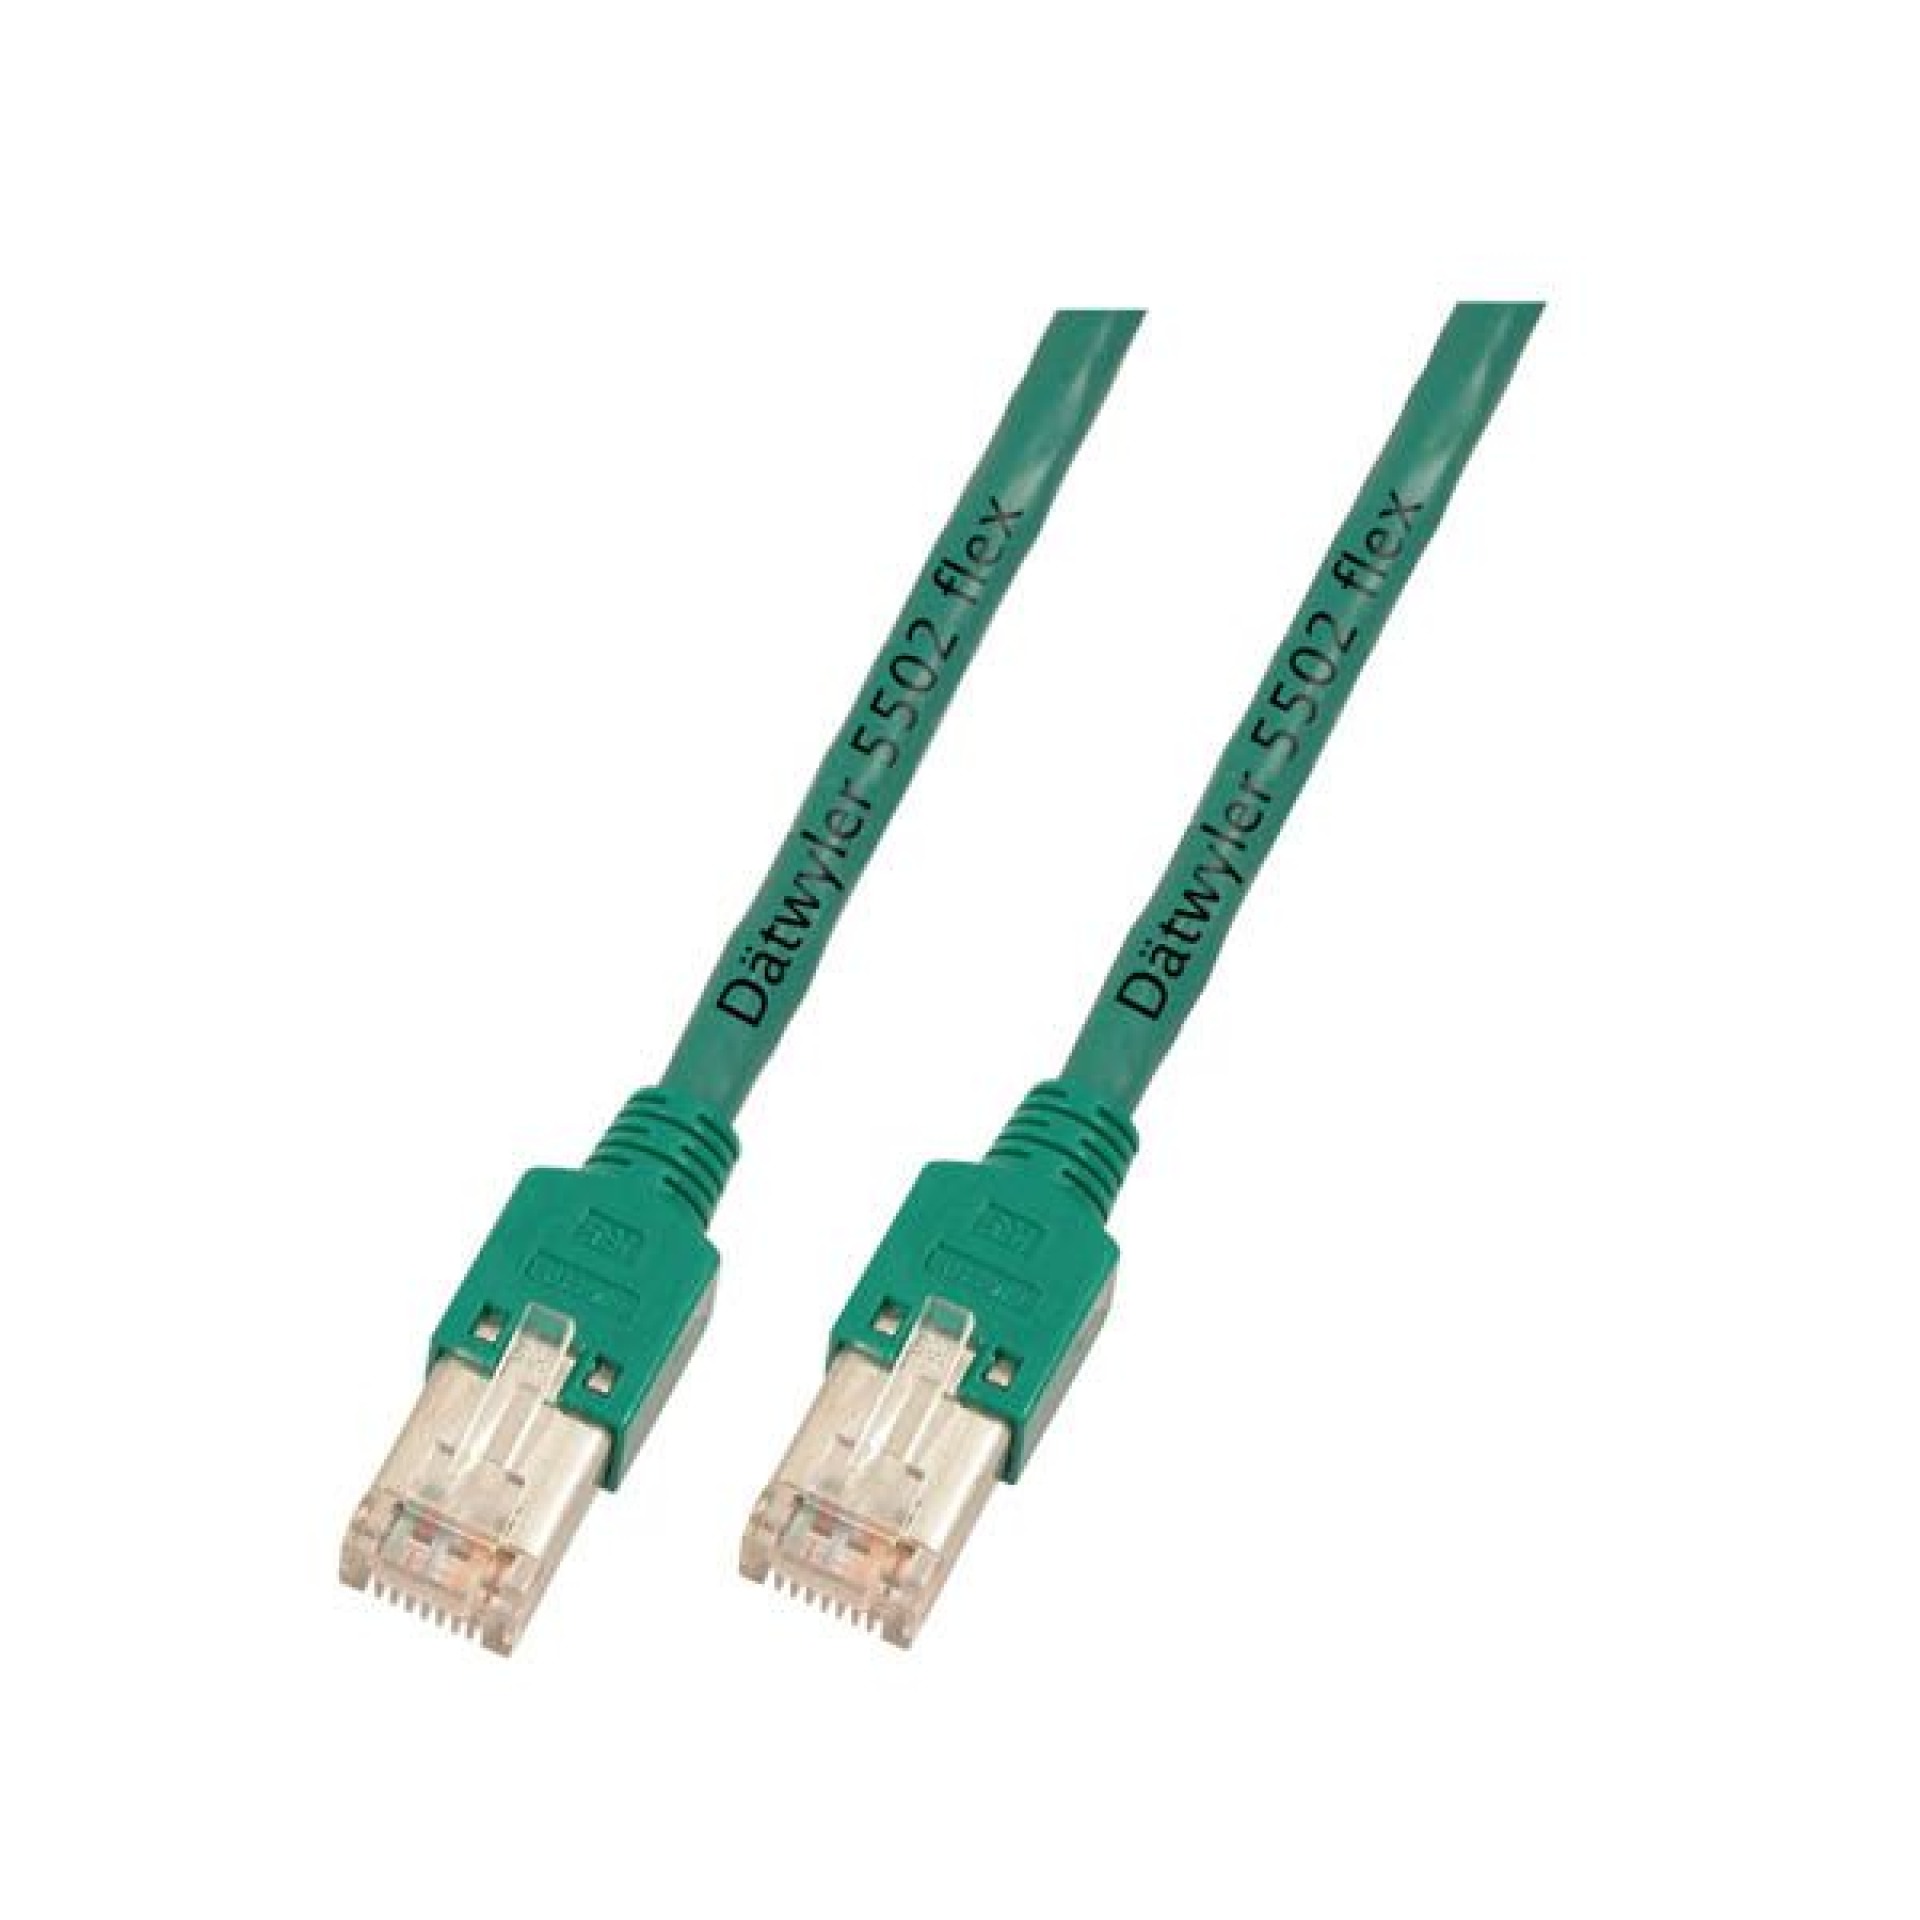 RJ45 Patch cable S/UTP, Cat.5e, TM11, Dätwyler CU 5502 PVC, 0,5m, green